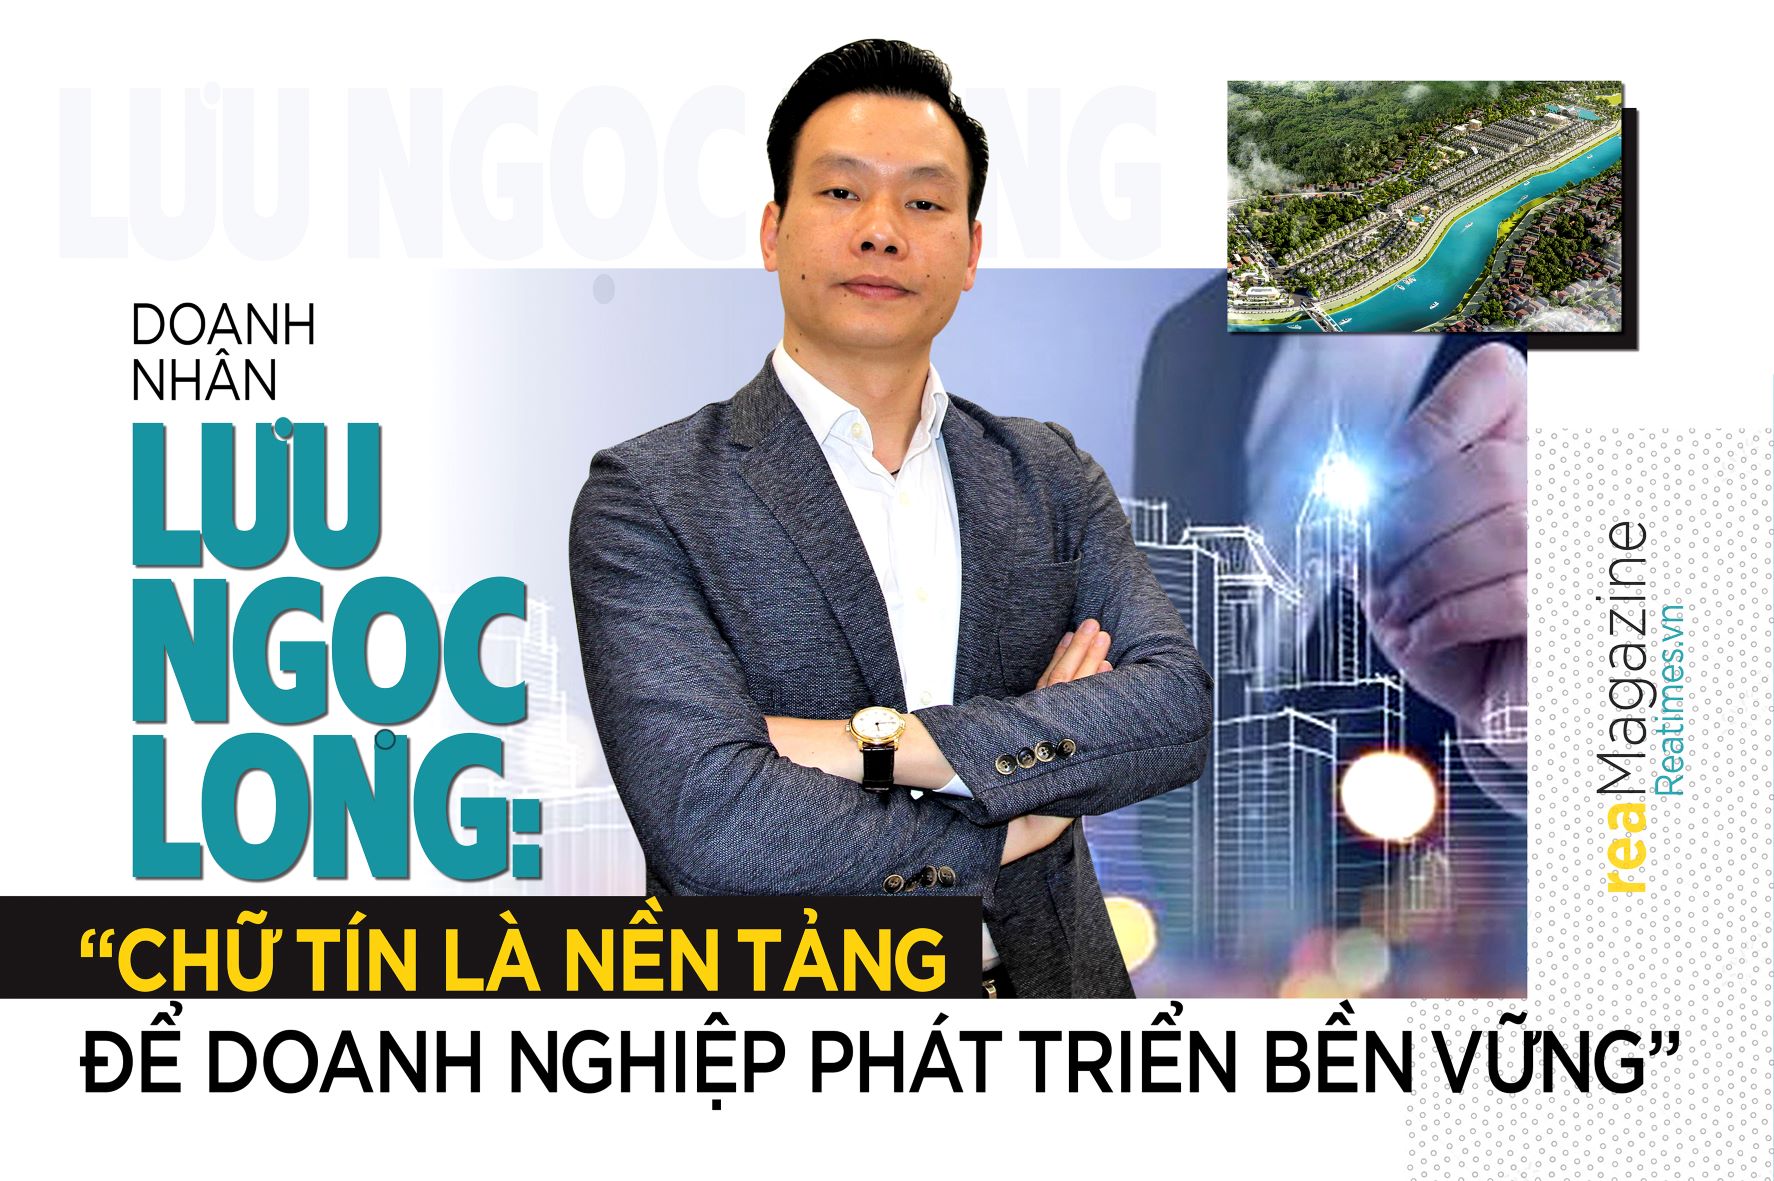 Doanh nhân Lưu Ngọc Long: “Chữ Tín là nền tảng để doanh nghiệp phát triển bền vững”